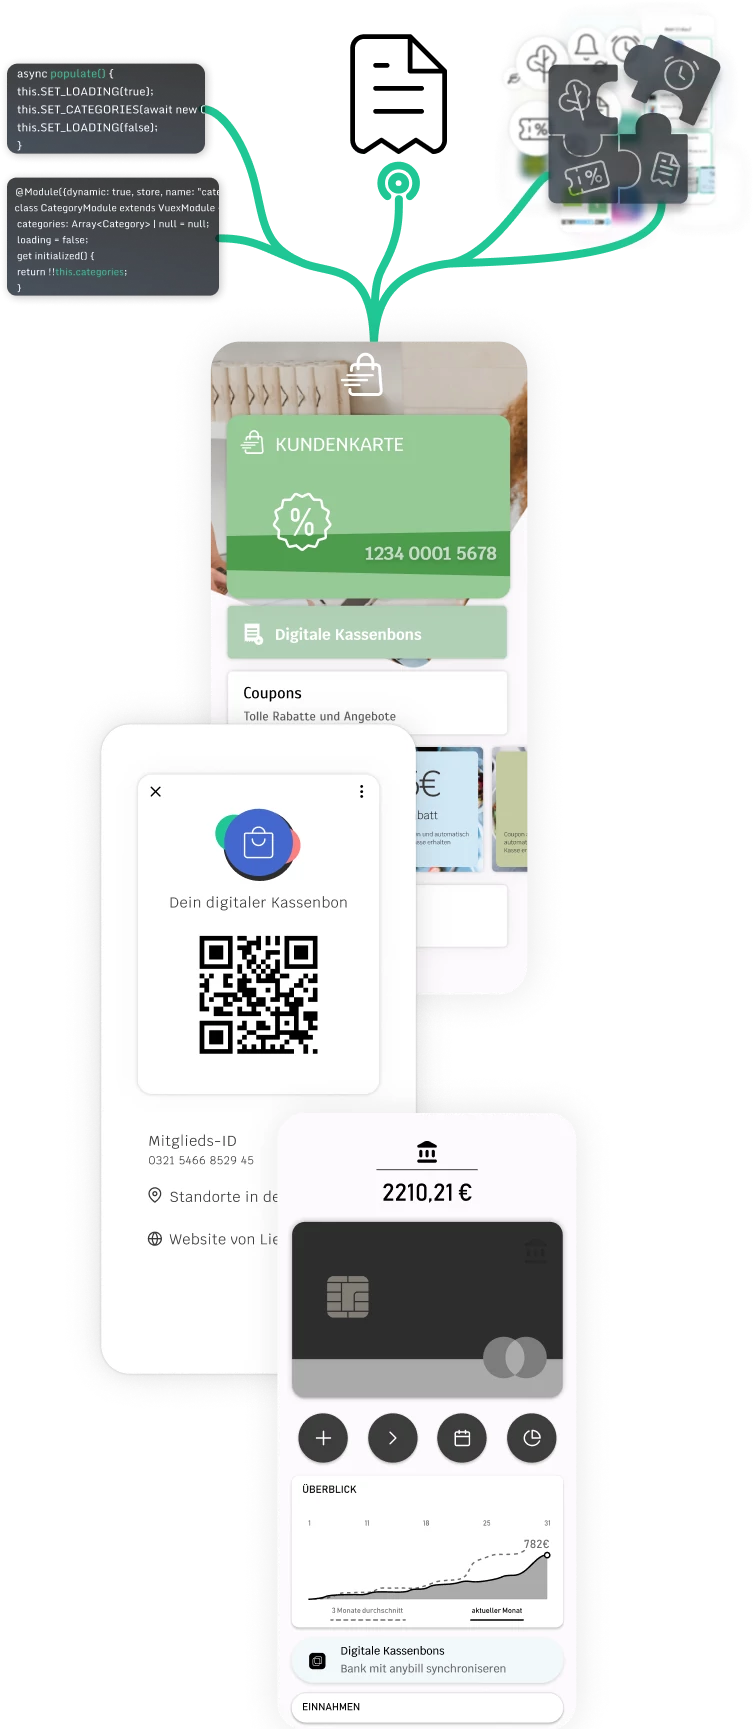 Abstrakte Darstellung der Verbindung von Händlerapp, QR-Code in der anybill App und einer beispielhaften Bankenapp mit den Möglichkeiten eines digitalen Kassenbons